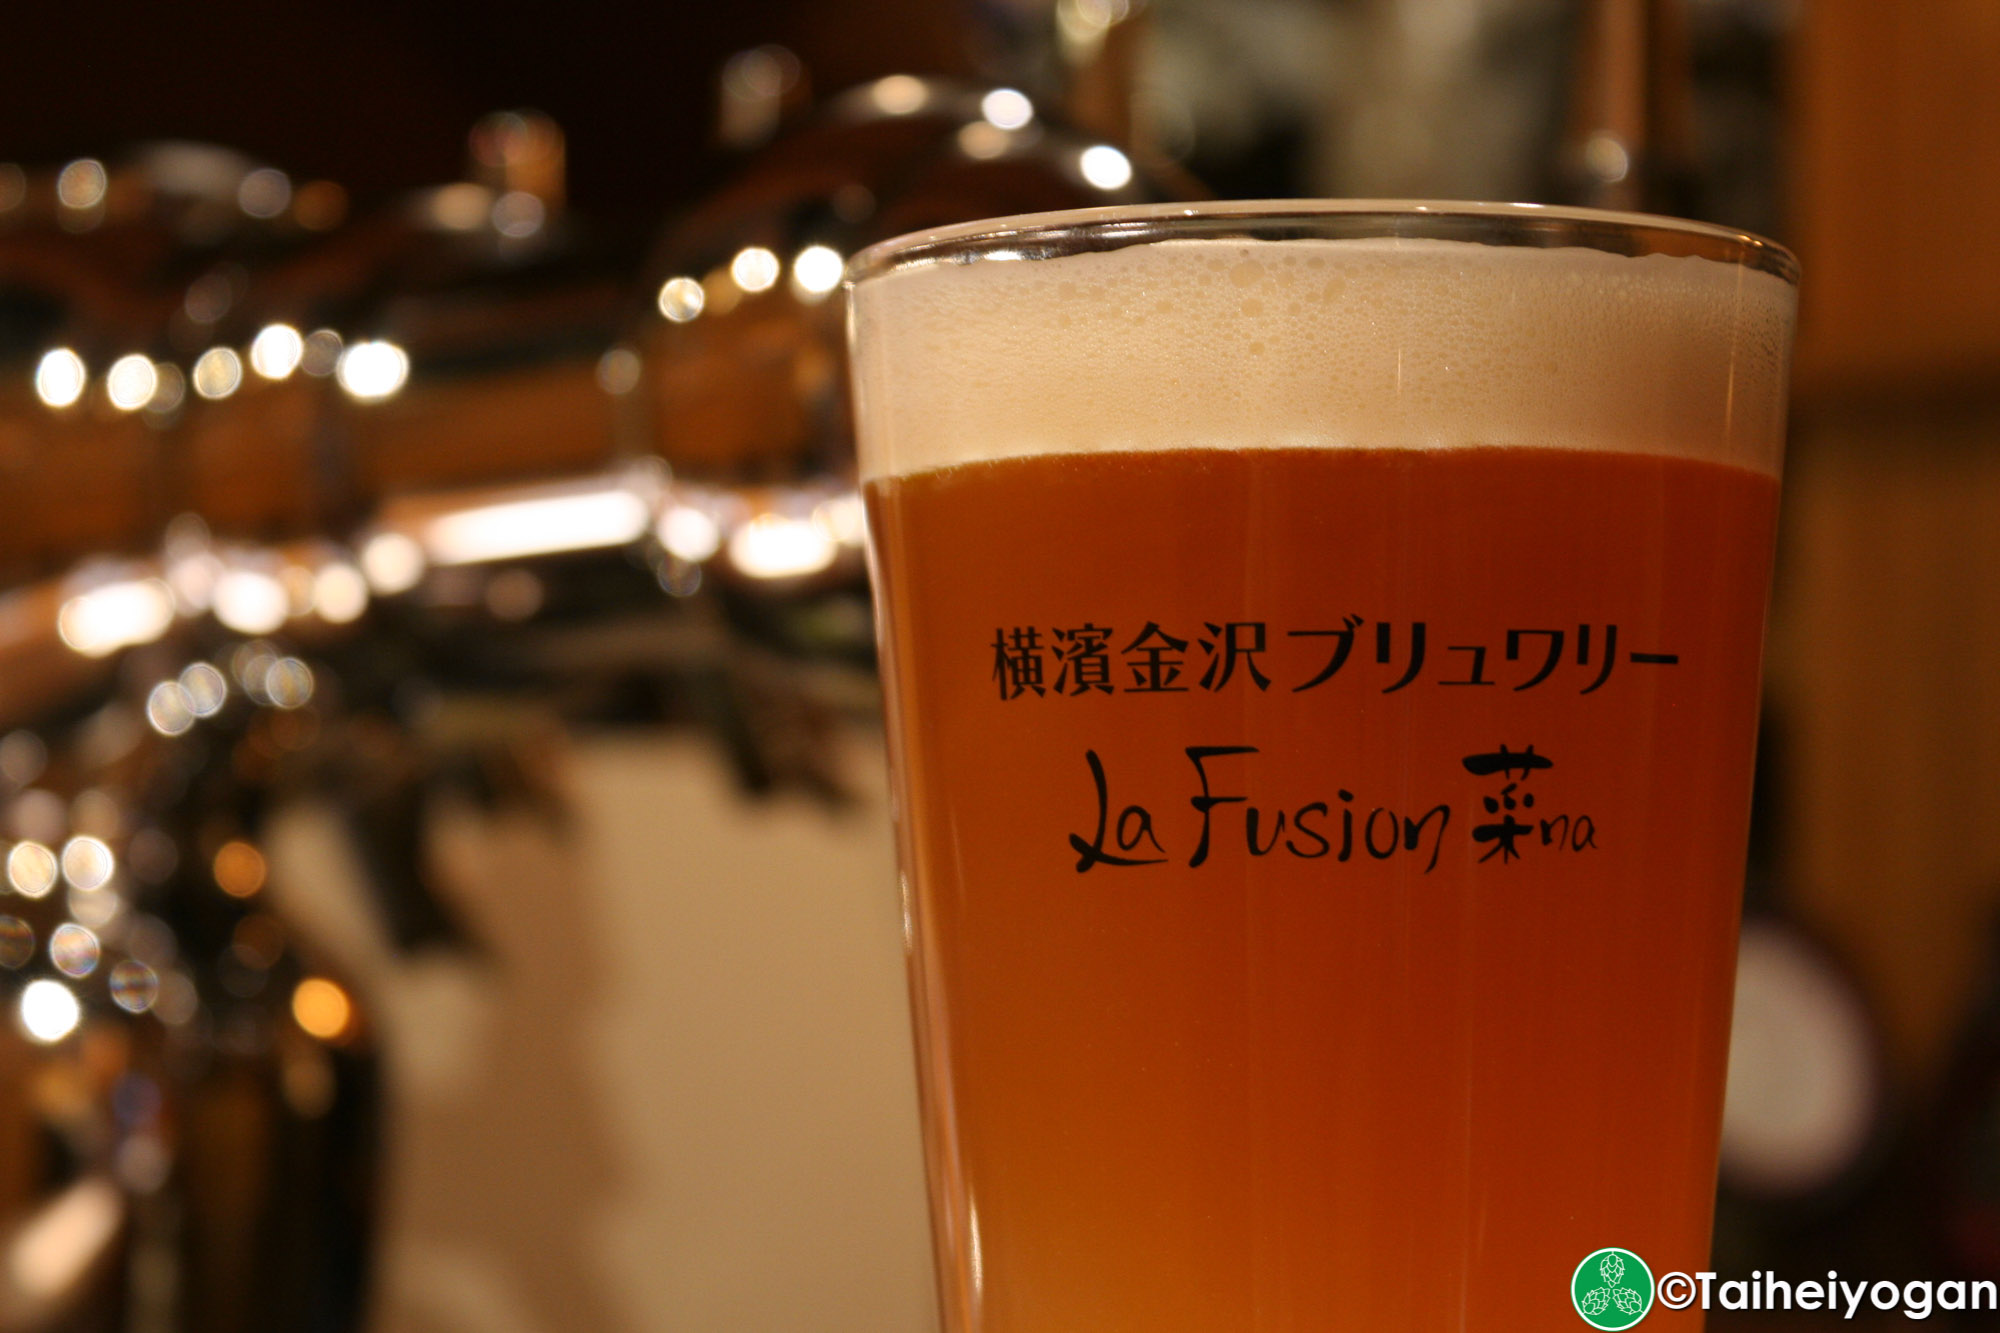 横濱金沢ブルワリーLa Fusion・Yokohama Kanazawa Brewery - La Fusion-16